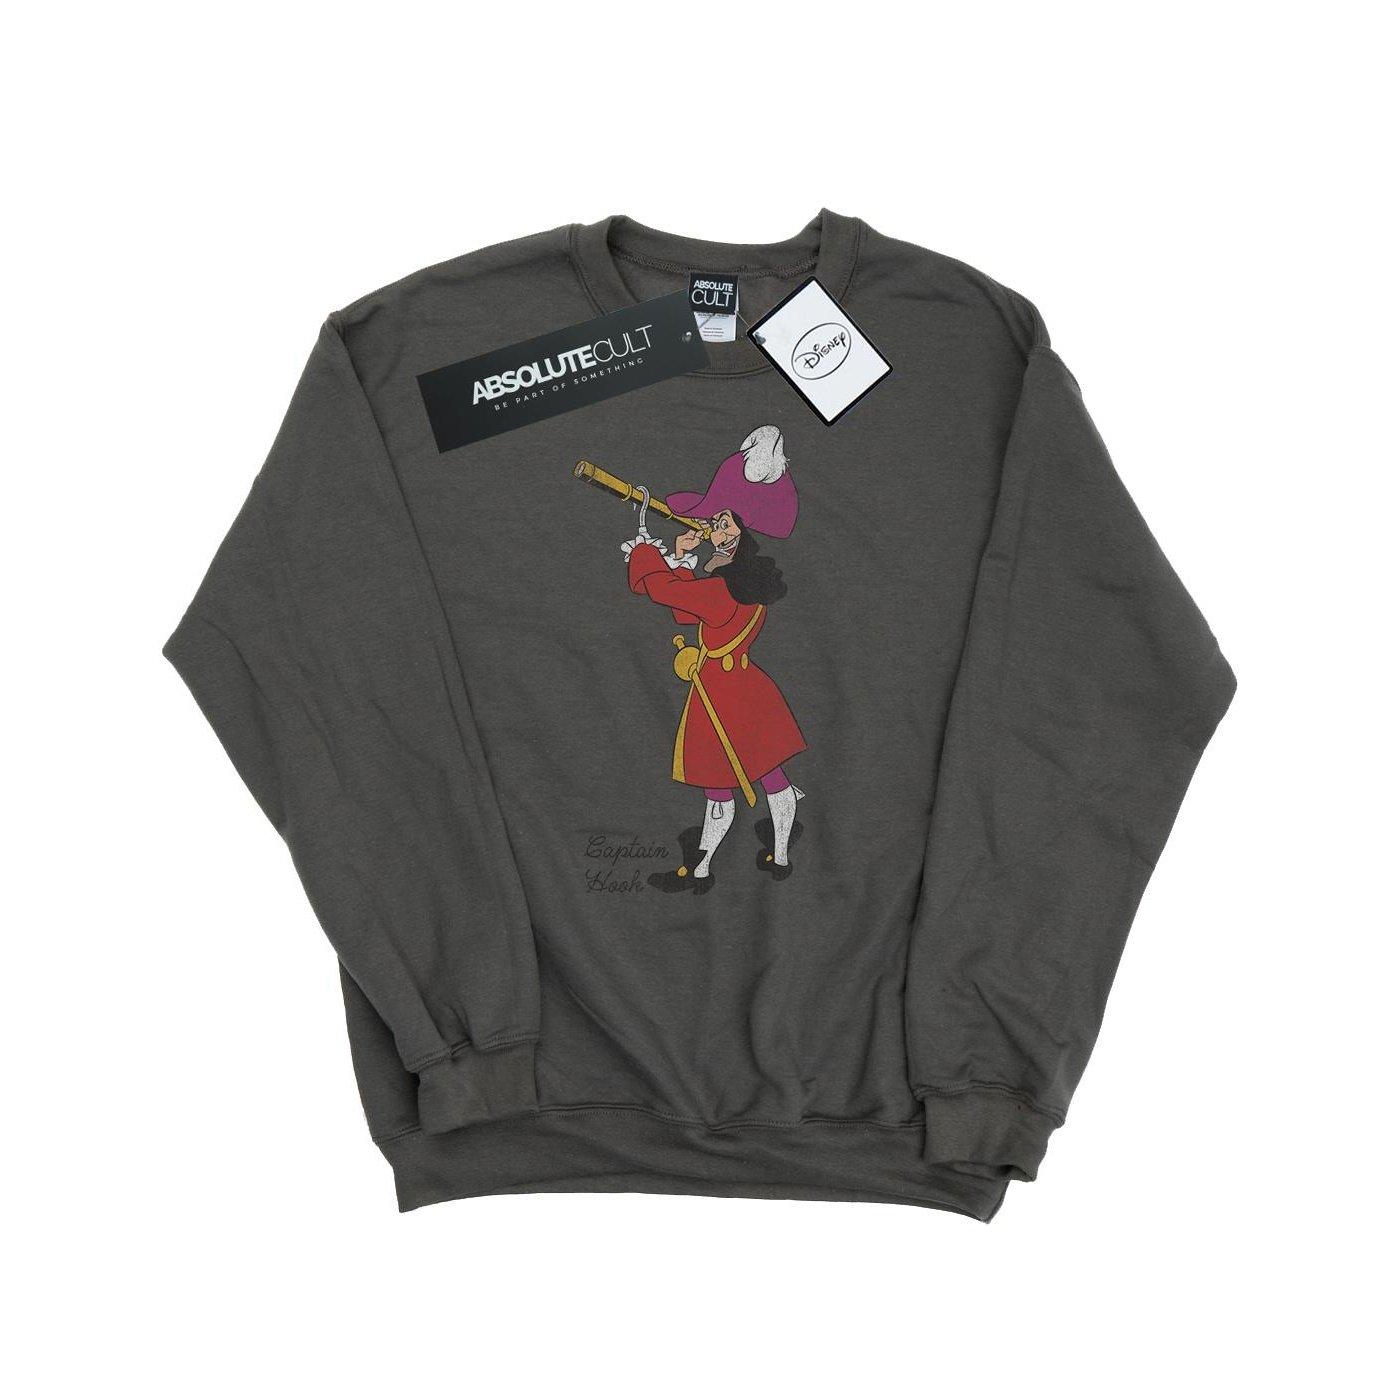 Classic Sweatshirt Herren Charcoal Black S von Peter Pan